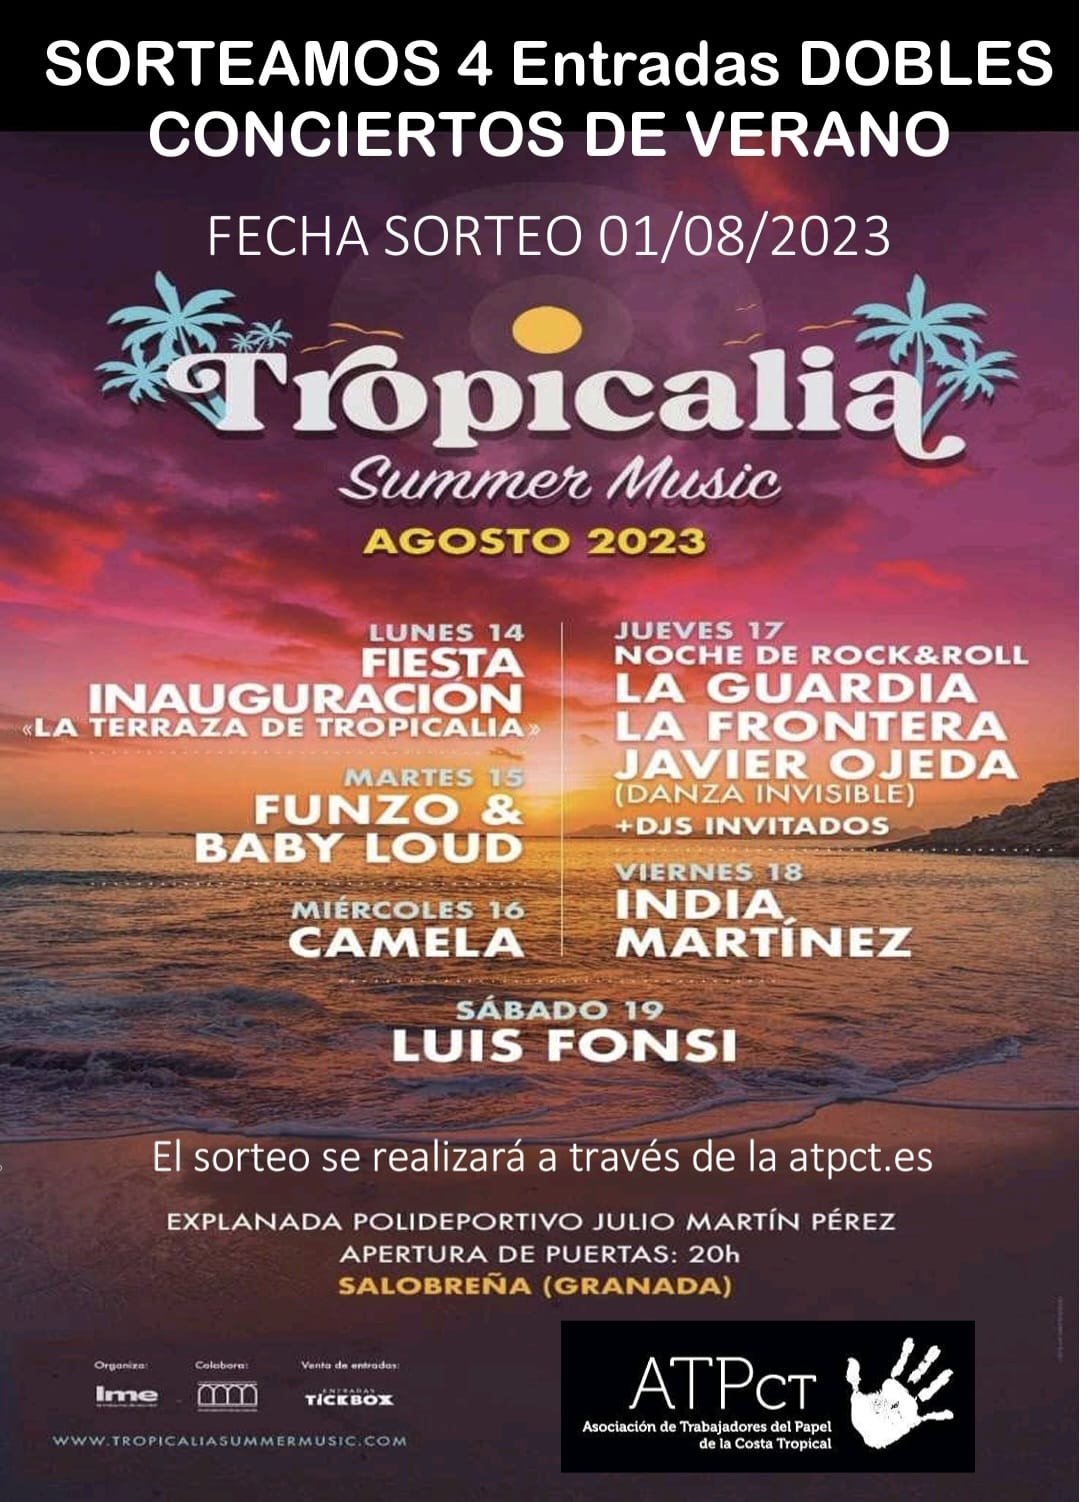 Sorteo de 4 entradas dobles para el Tropicalia Summer Music Salobreña 2023.